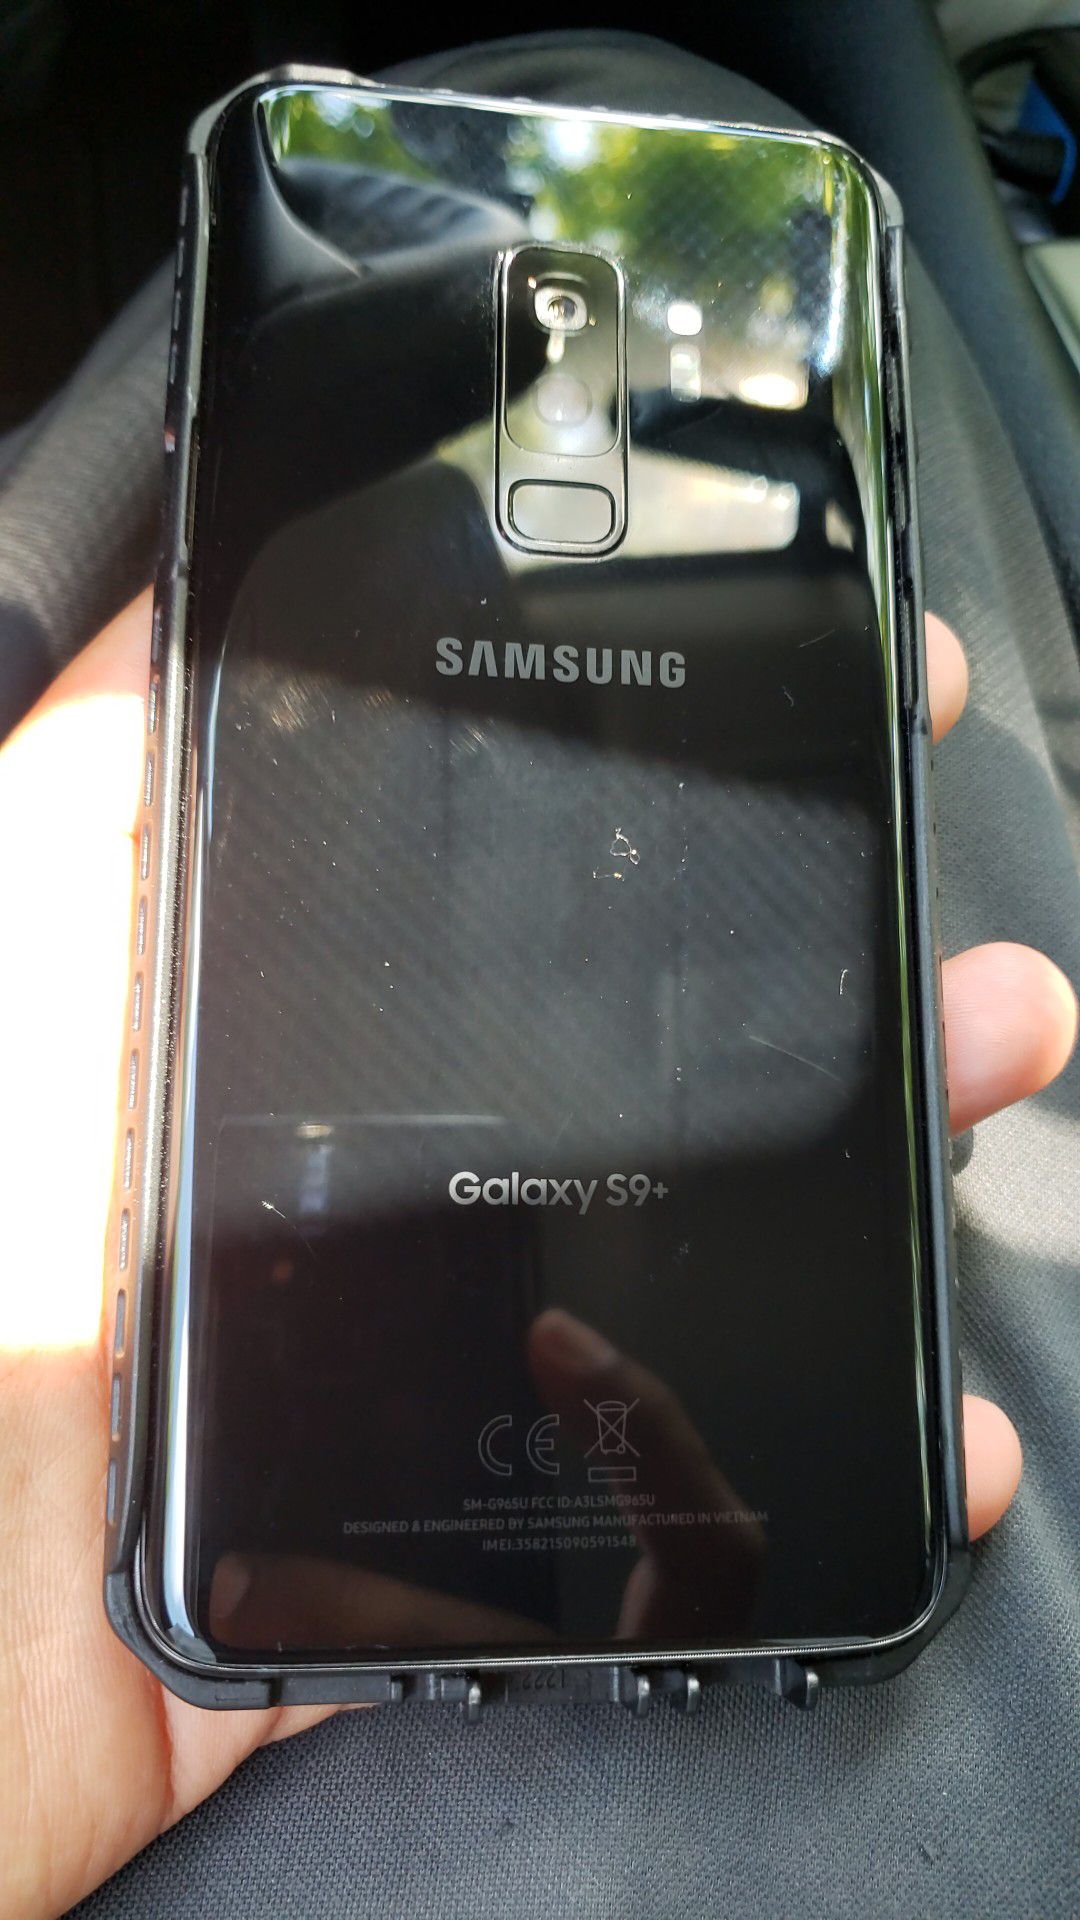 Galaxy s9+ 64gb unlocked tmobile